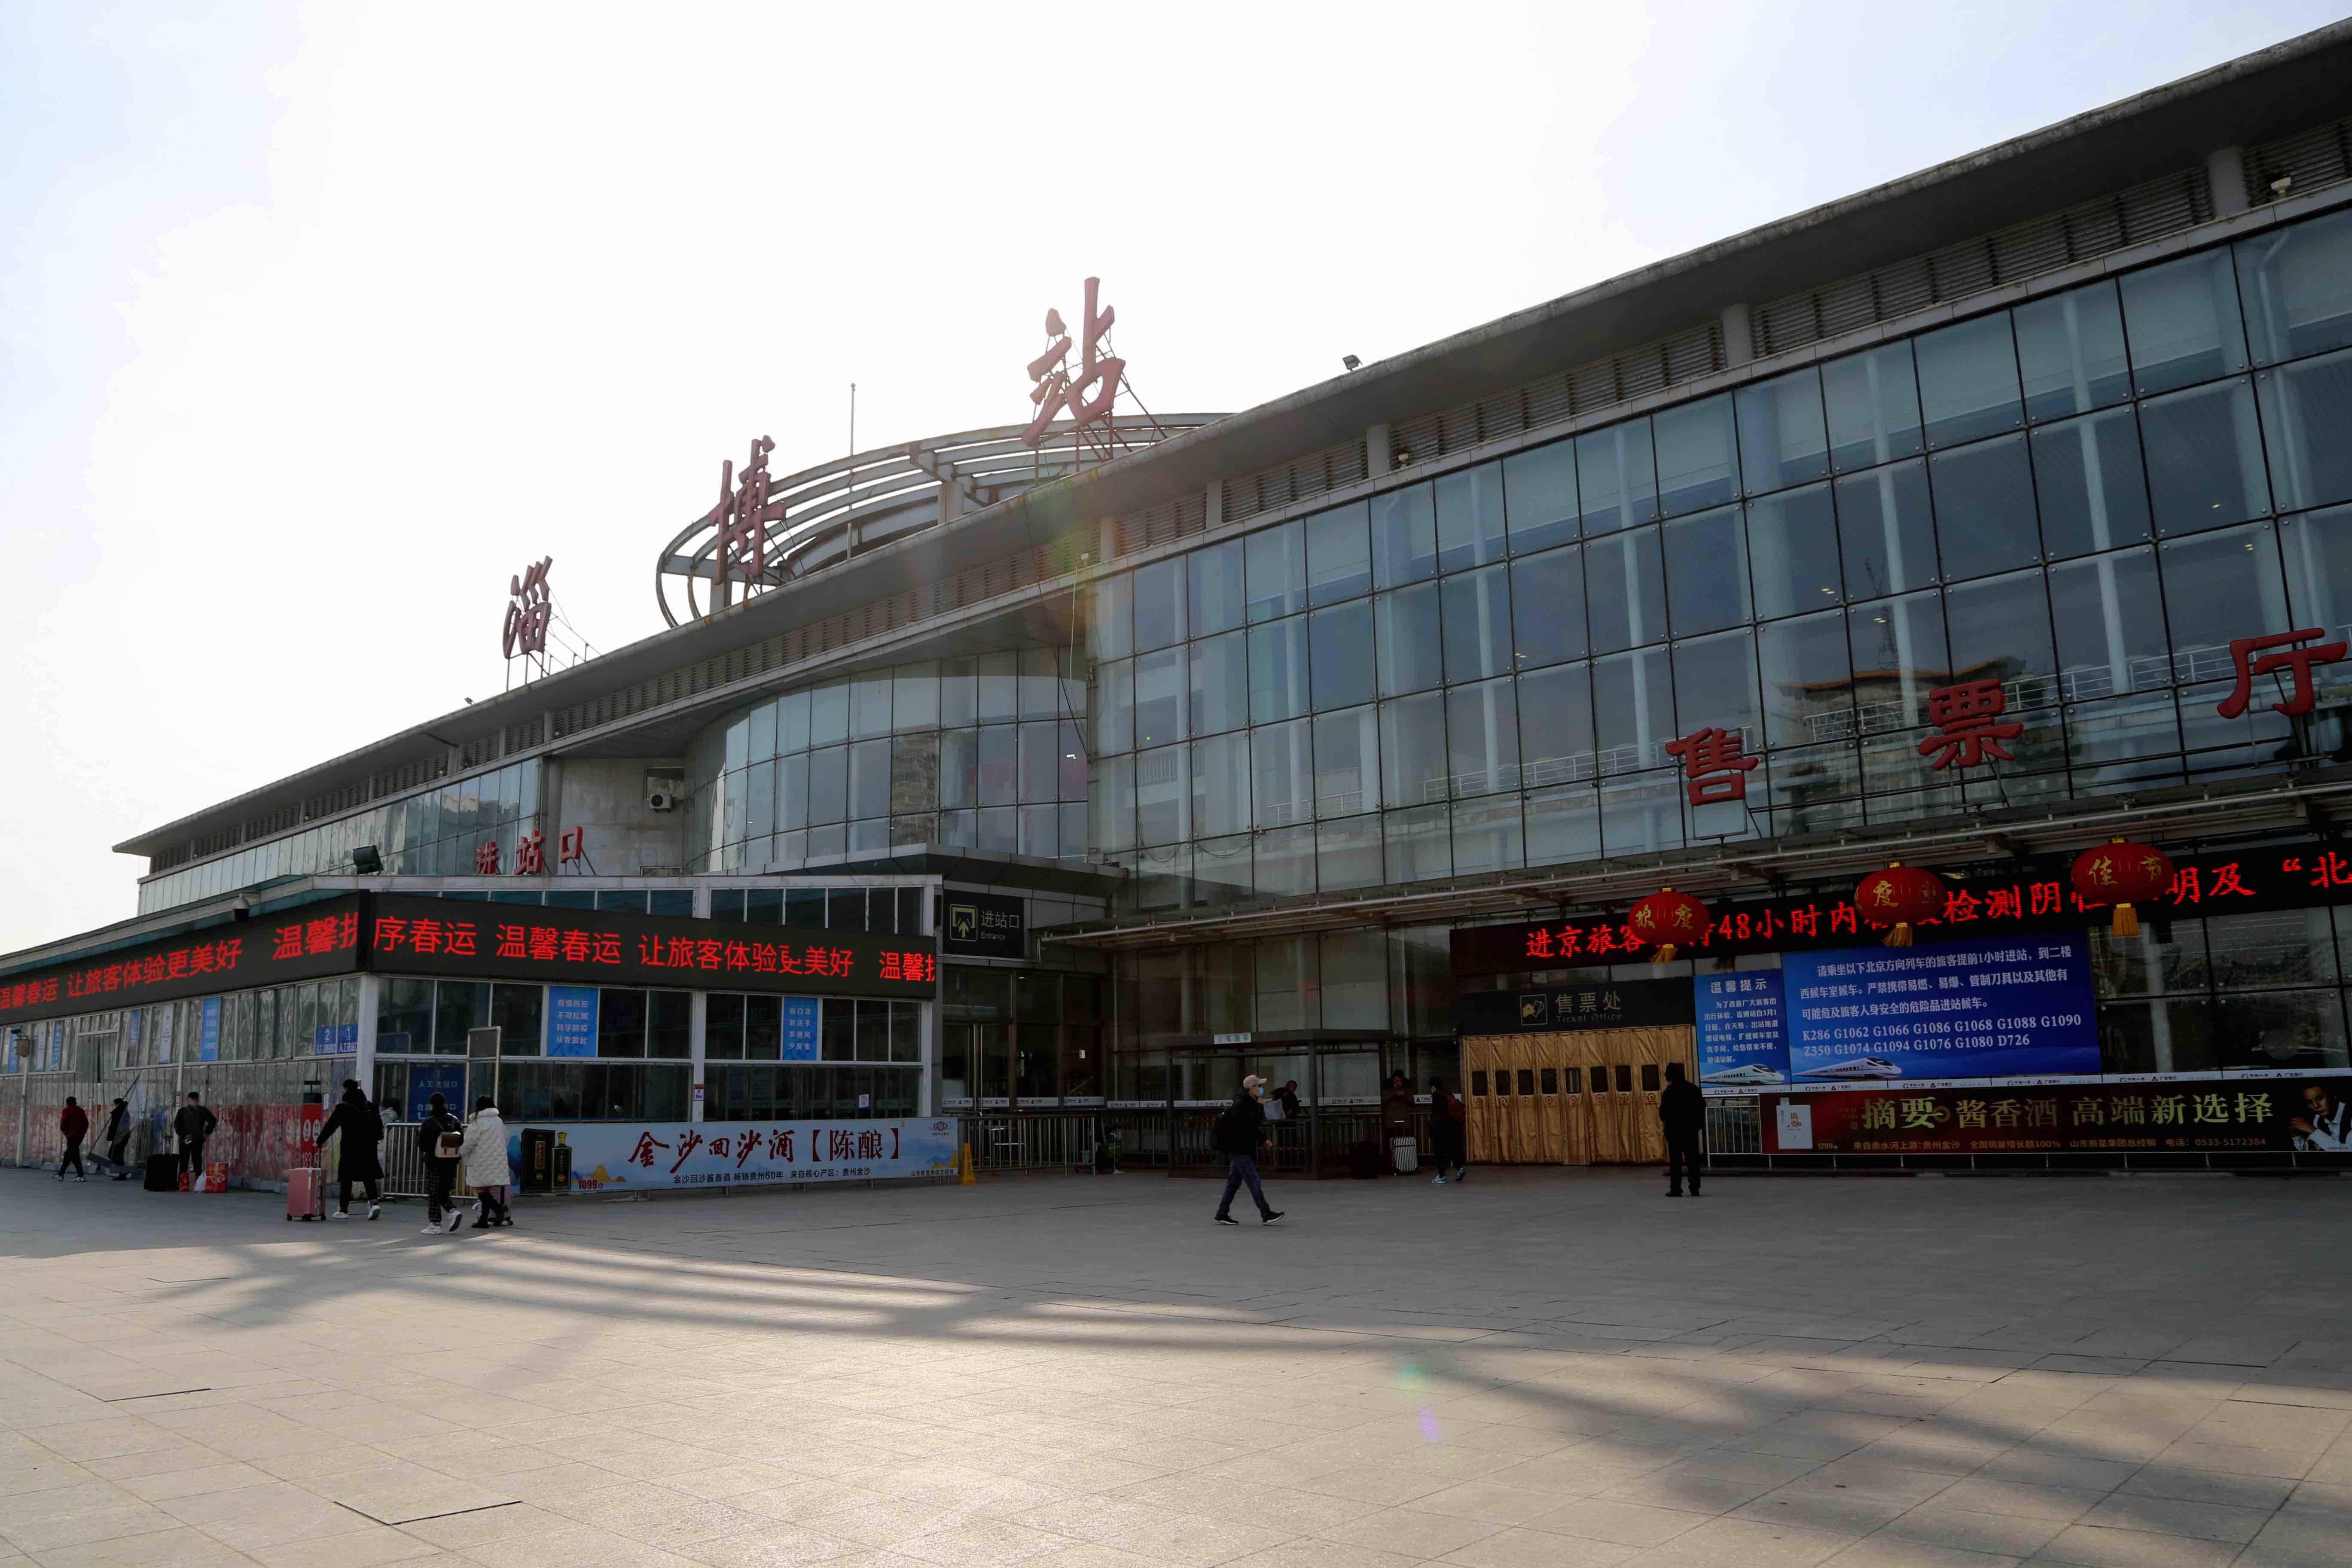 因站台改造施工 3月1日起淄博火车站41趟列车取消办理客运业务